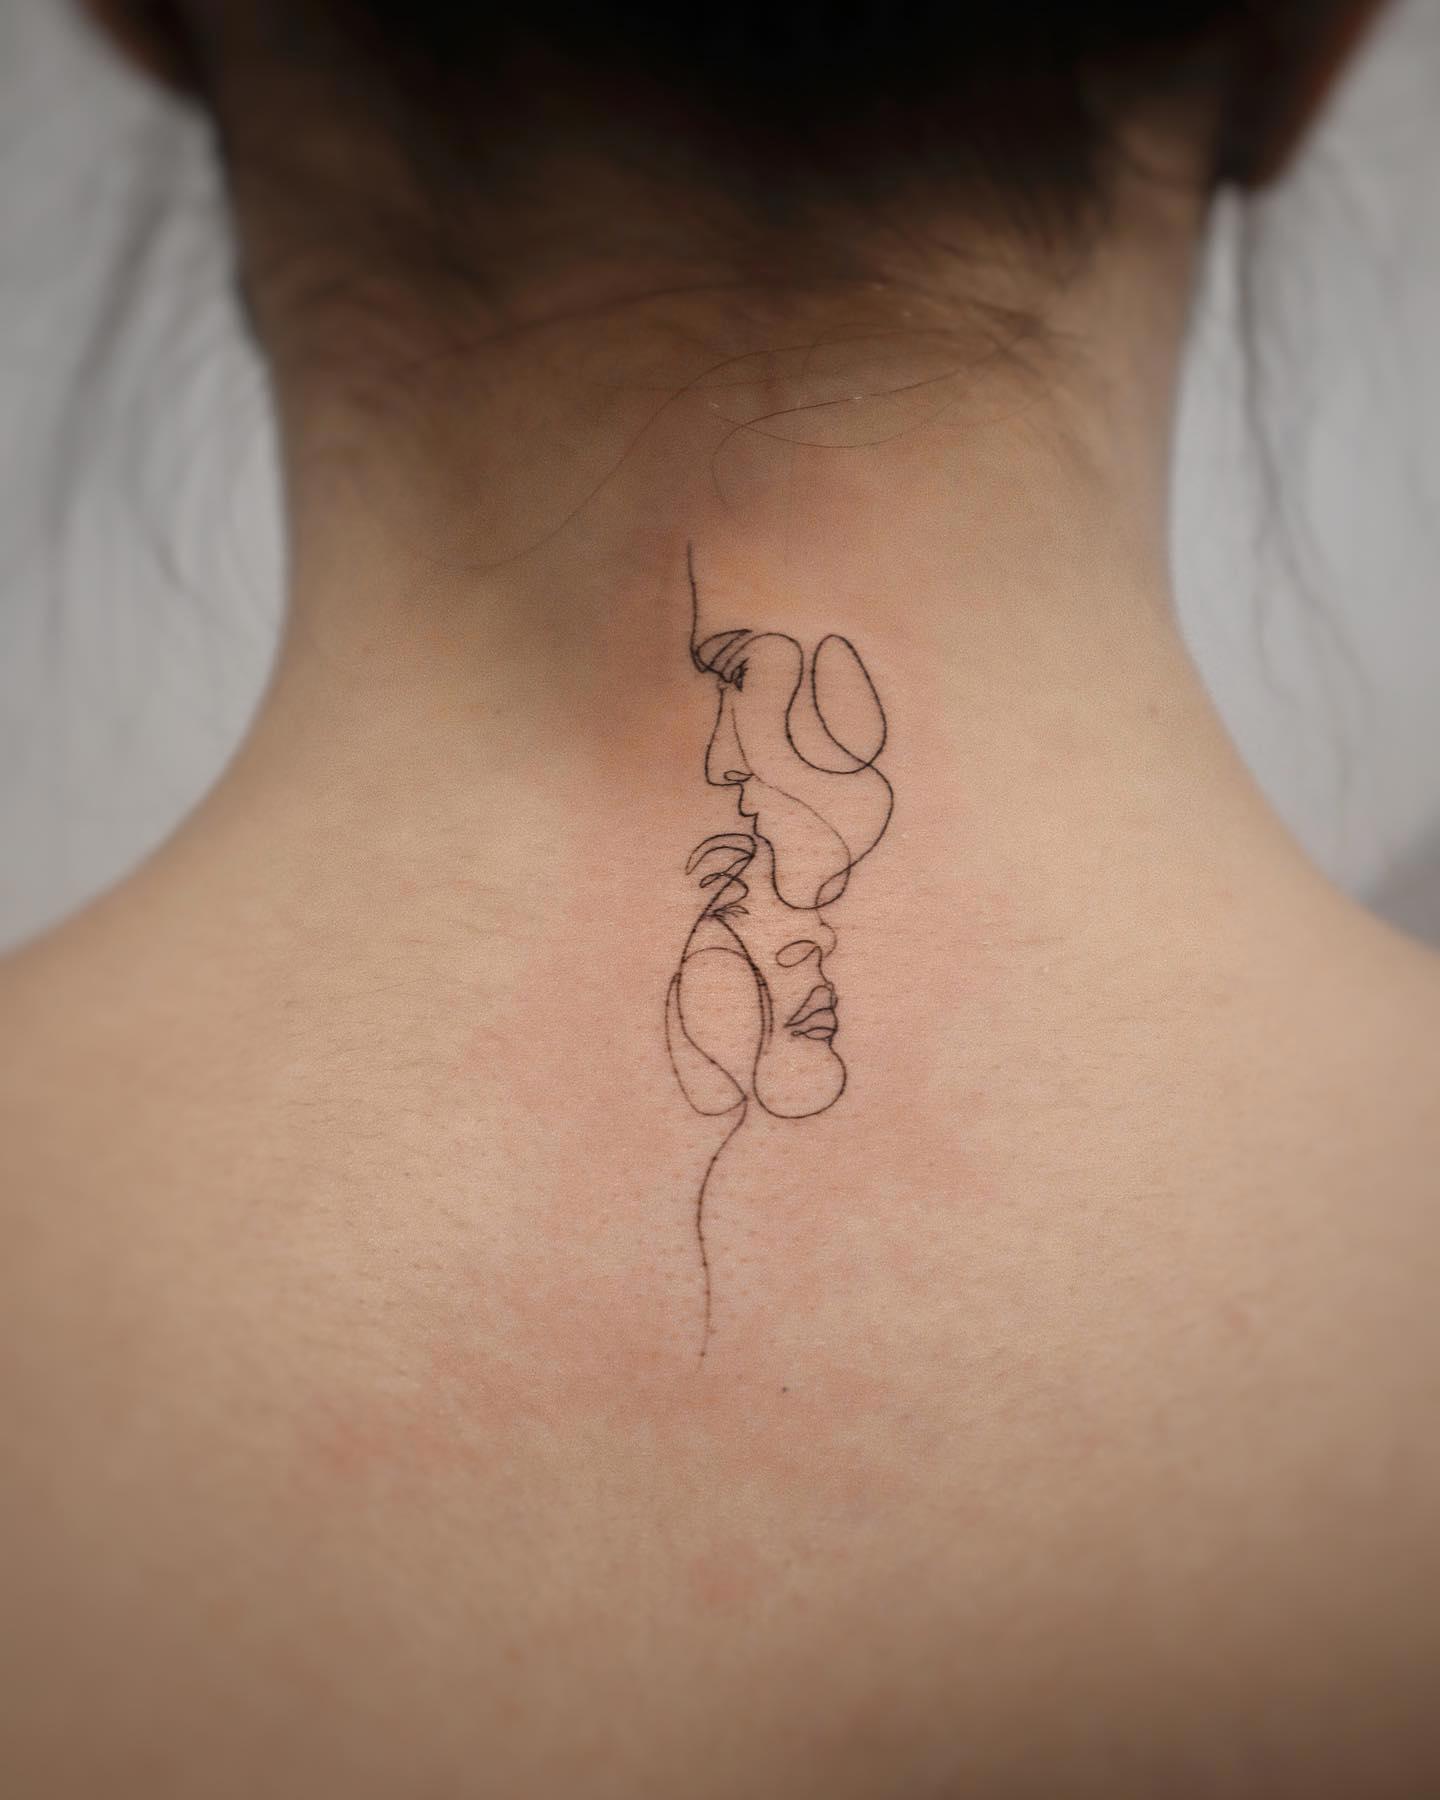 Tatuaje en la nuca de de dos siluetas